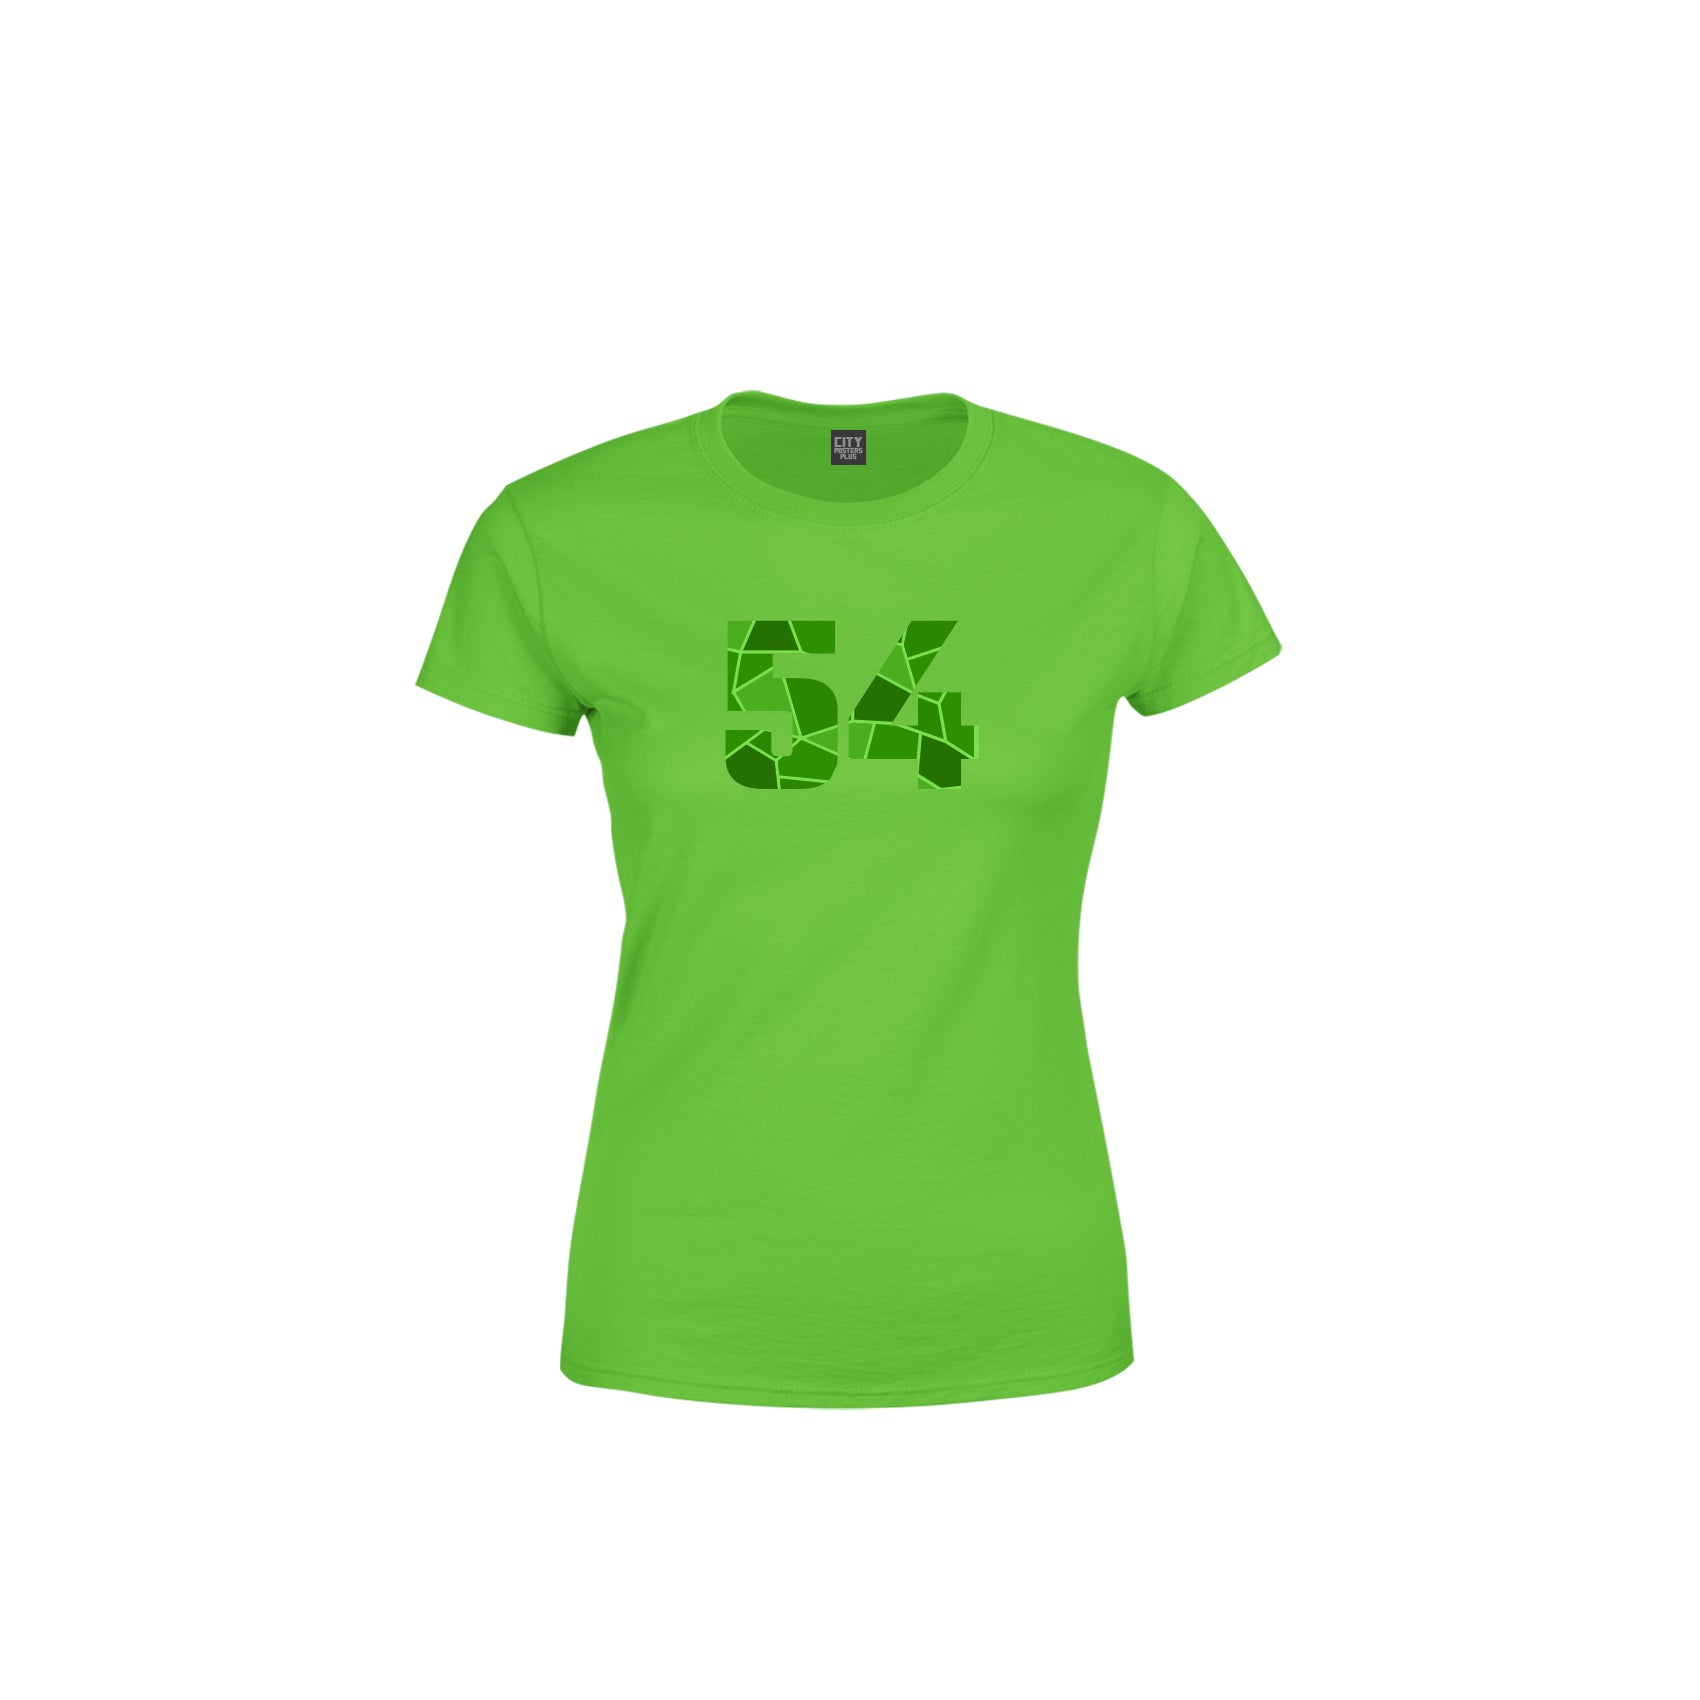 54 Number Women's T-Shirt (Liril Green)